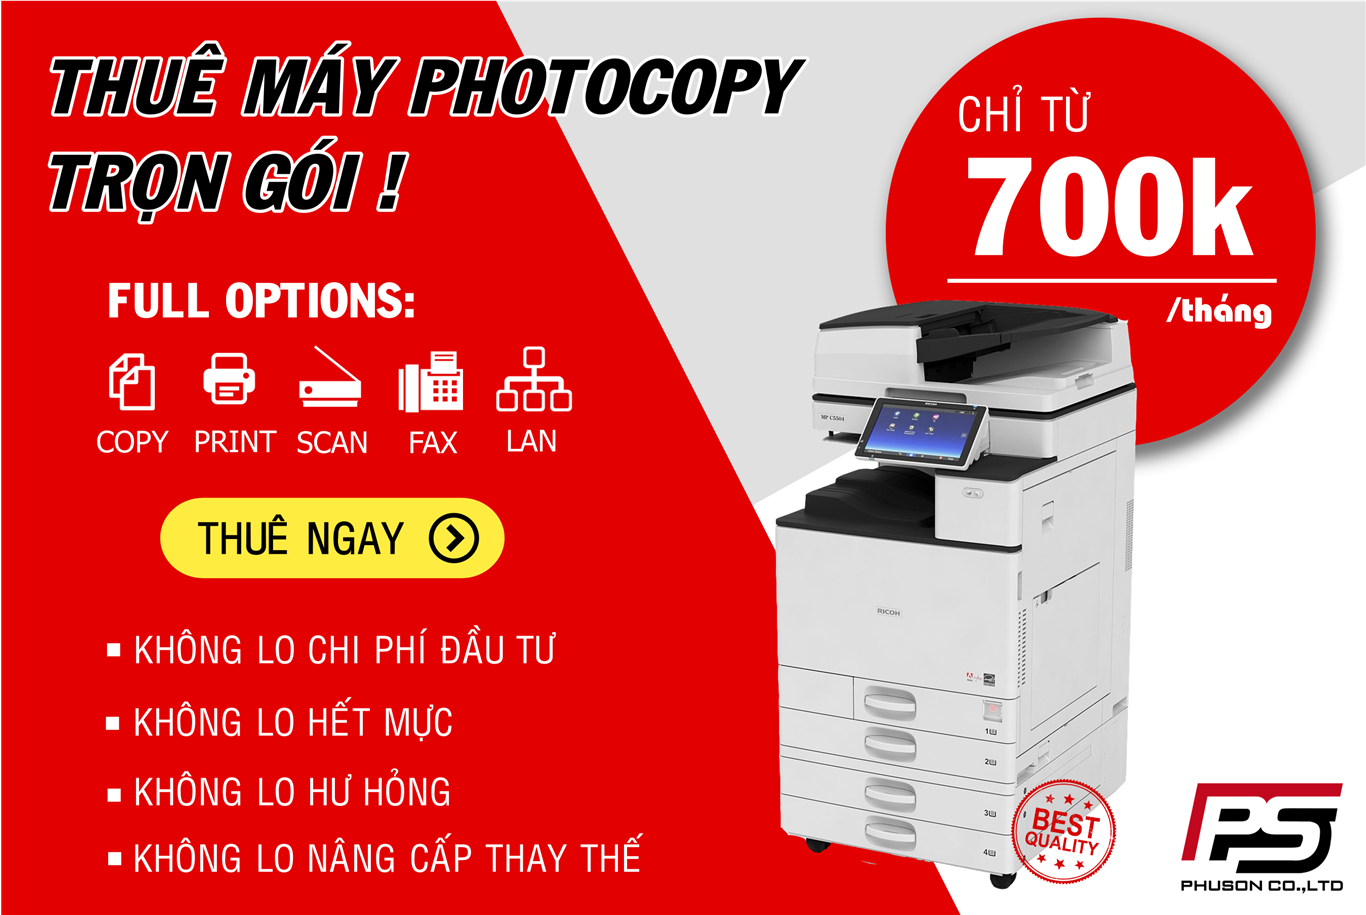 Dịch vụ cho thuê máy photocopy chỉ từ 700k